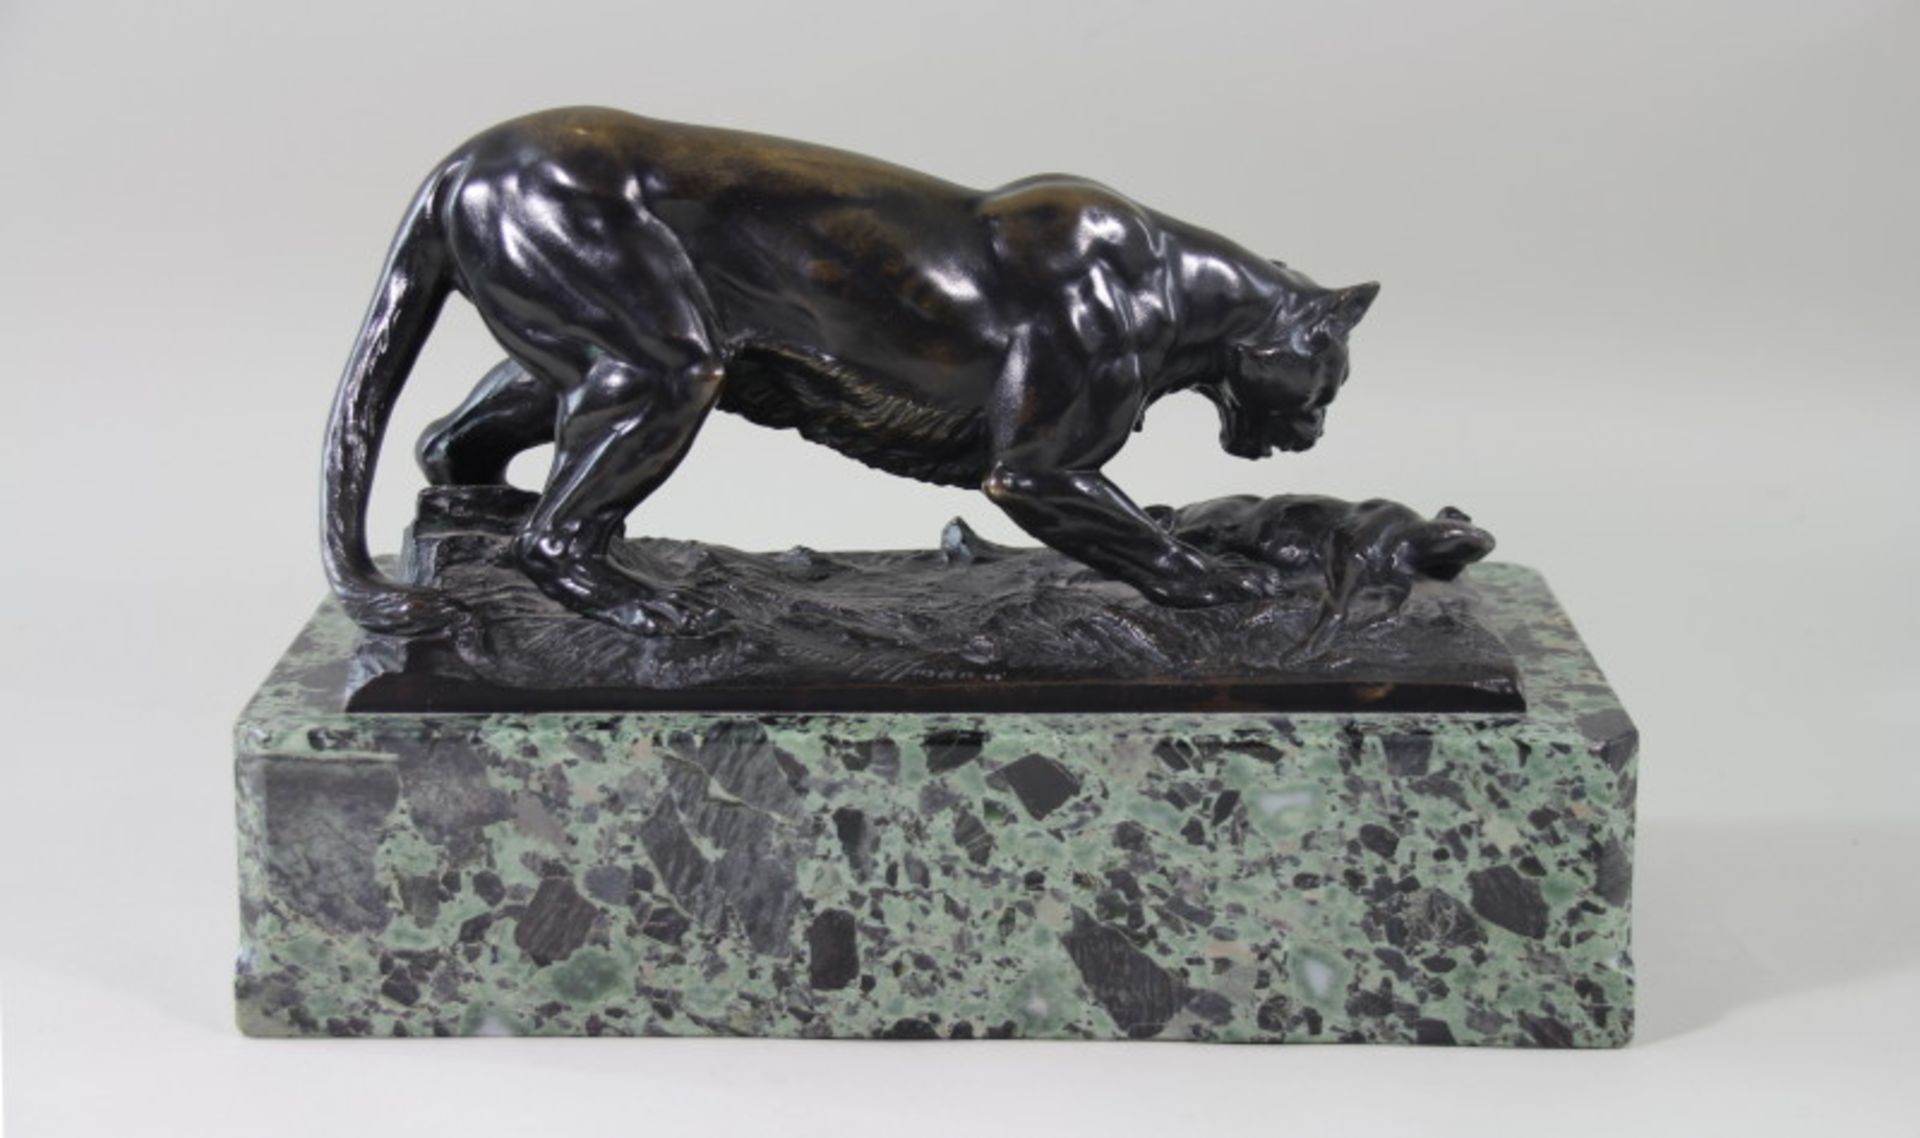 Bronzeskulptur, "Löwin mit erlegter Gazelle", Otto Hoffmann (1885-1915) Skulptur - braun/goldene - Bild 2 aus 3